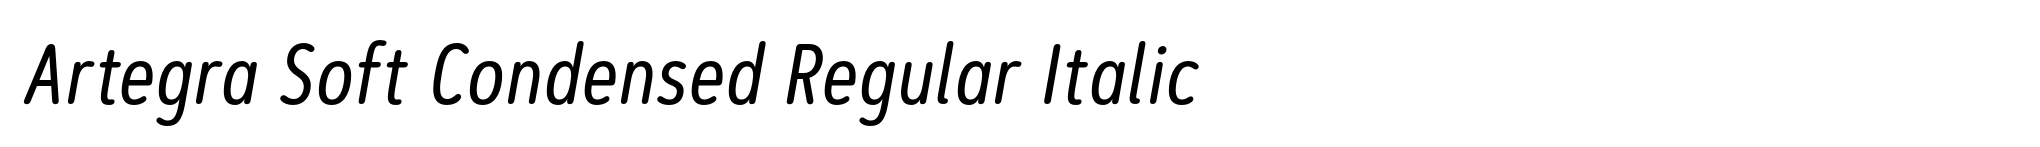 Artegra Soft Condensed Regular Italic image